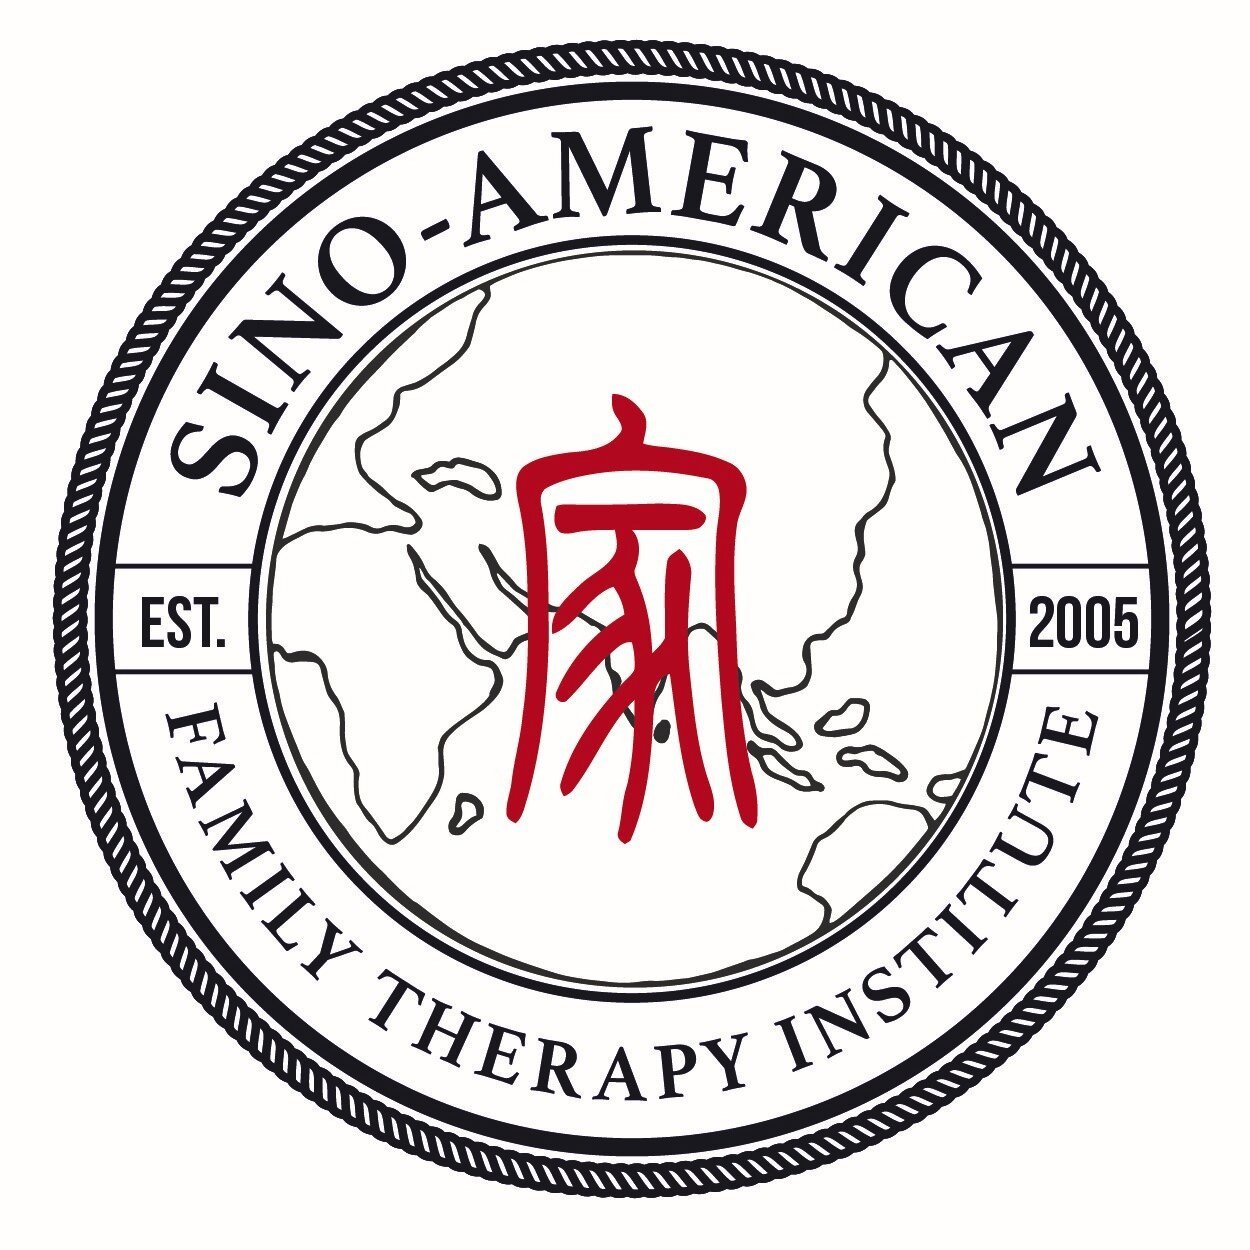 Sino-American Family Therapy Institute (SAFTI)